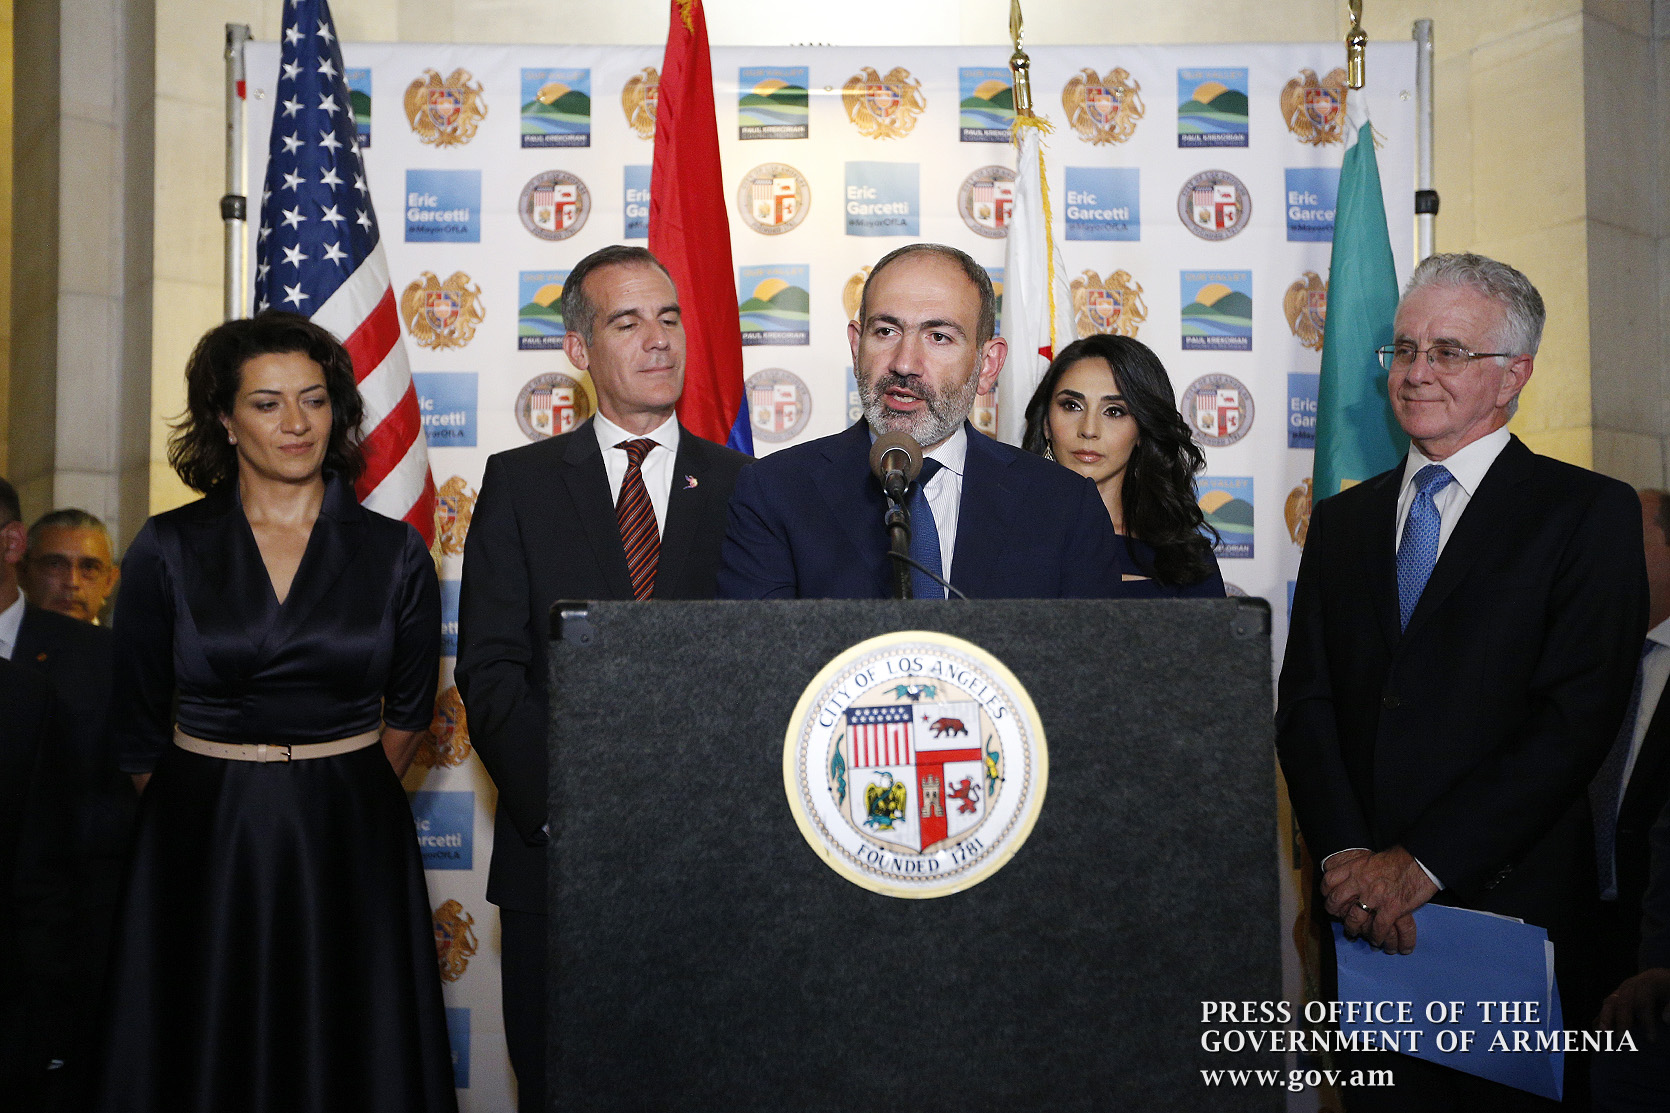 Лос-Анджелес будет центром углубления армяно-калифорнийского сотрудничества - премьер